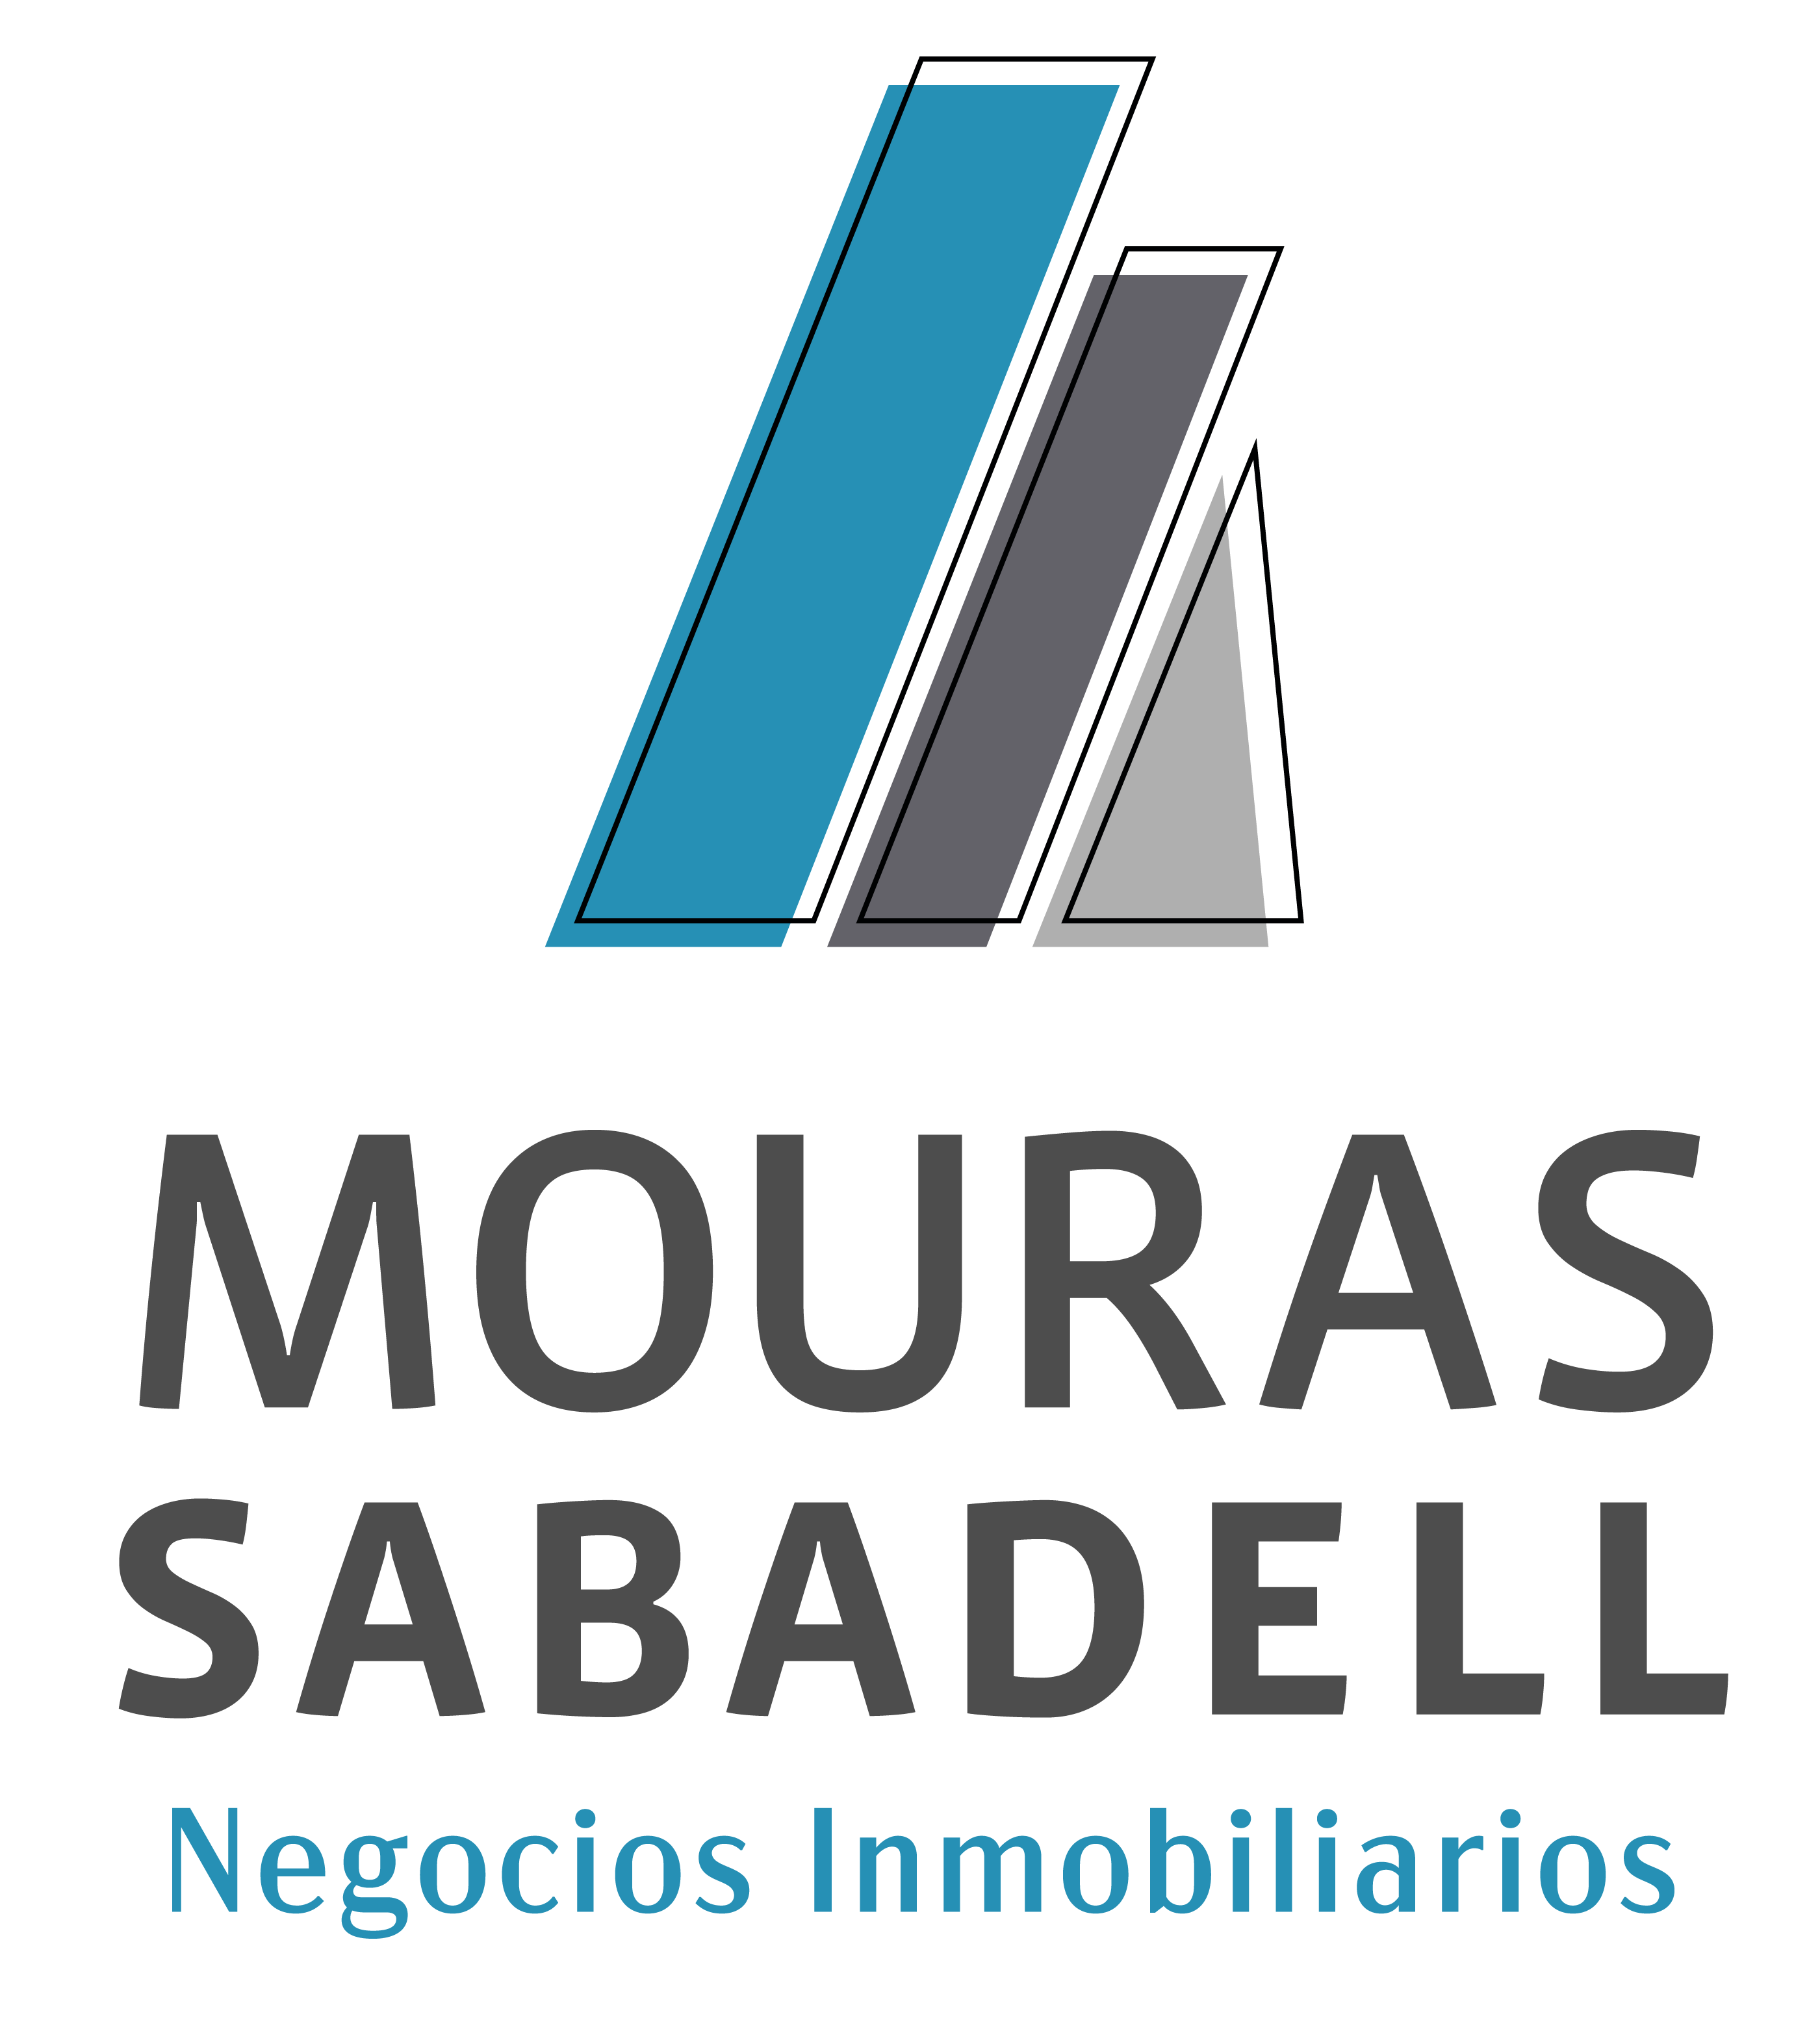 Mouras Sabadell Negocios Inmobiliarios